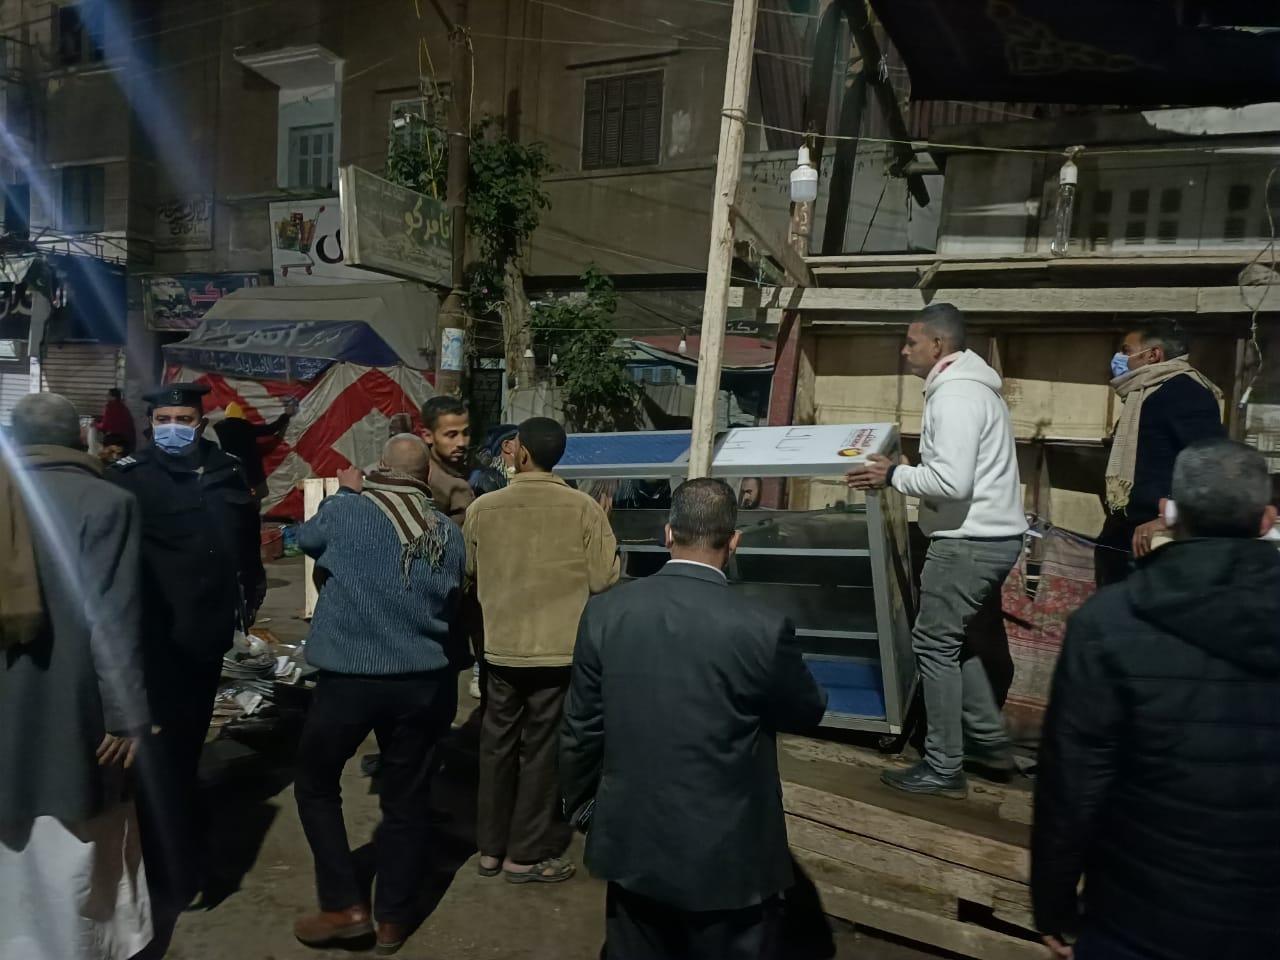 محافظ القليوبية يقود حملة ليلية مكبرة لإزالة الإشغالات والمخالفات بمدينة شبين القناطر